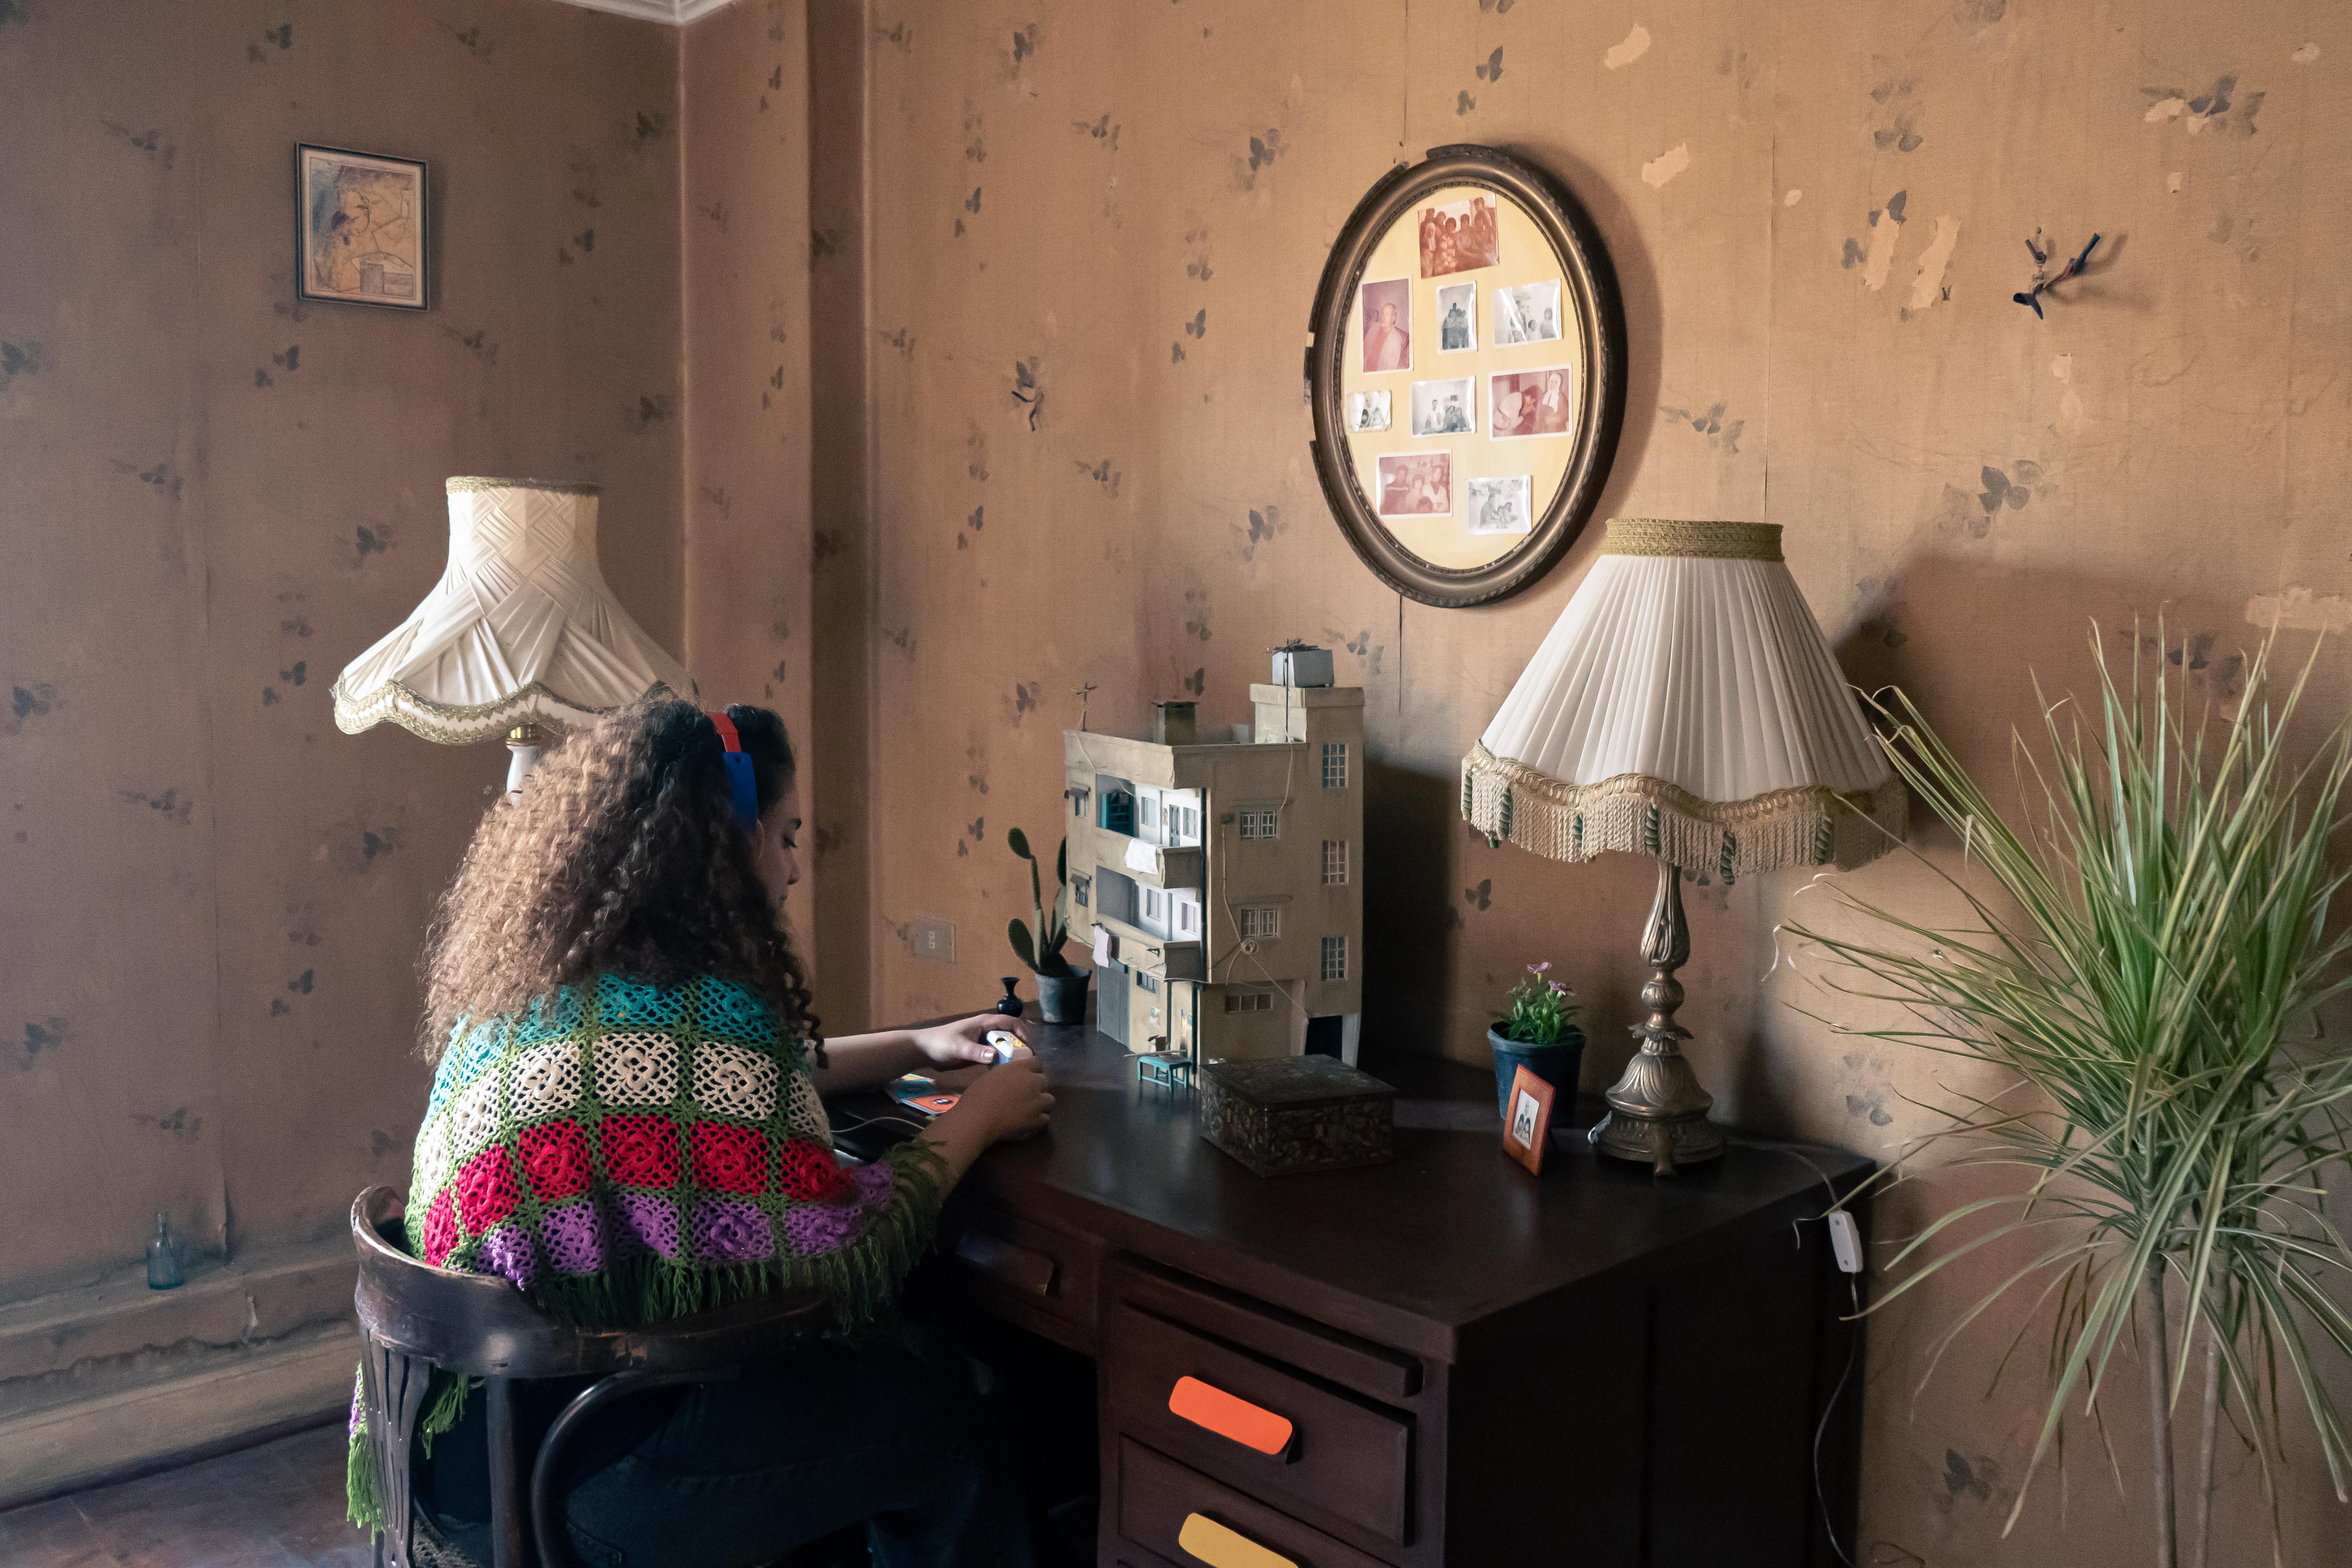 Das Bild zeigt ein gemütliches Zimmer mit brauner Tapete. Eine Person mit Kopfhörern sitzt an einem Schreibtisch. Dort steht das Modell eines Hauses und darüber hängen viele Familienfotos.